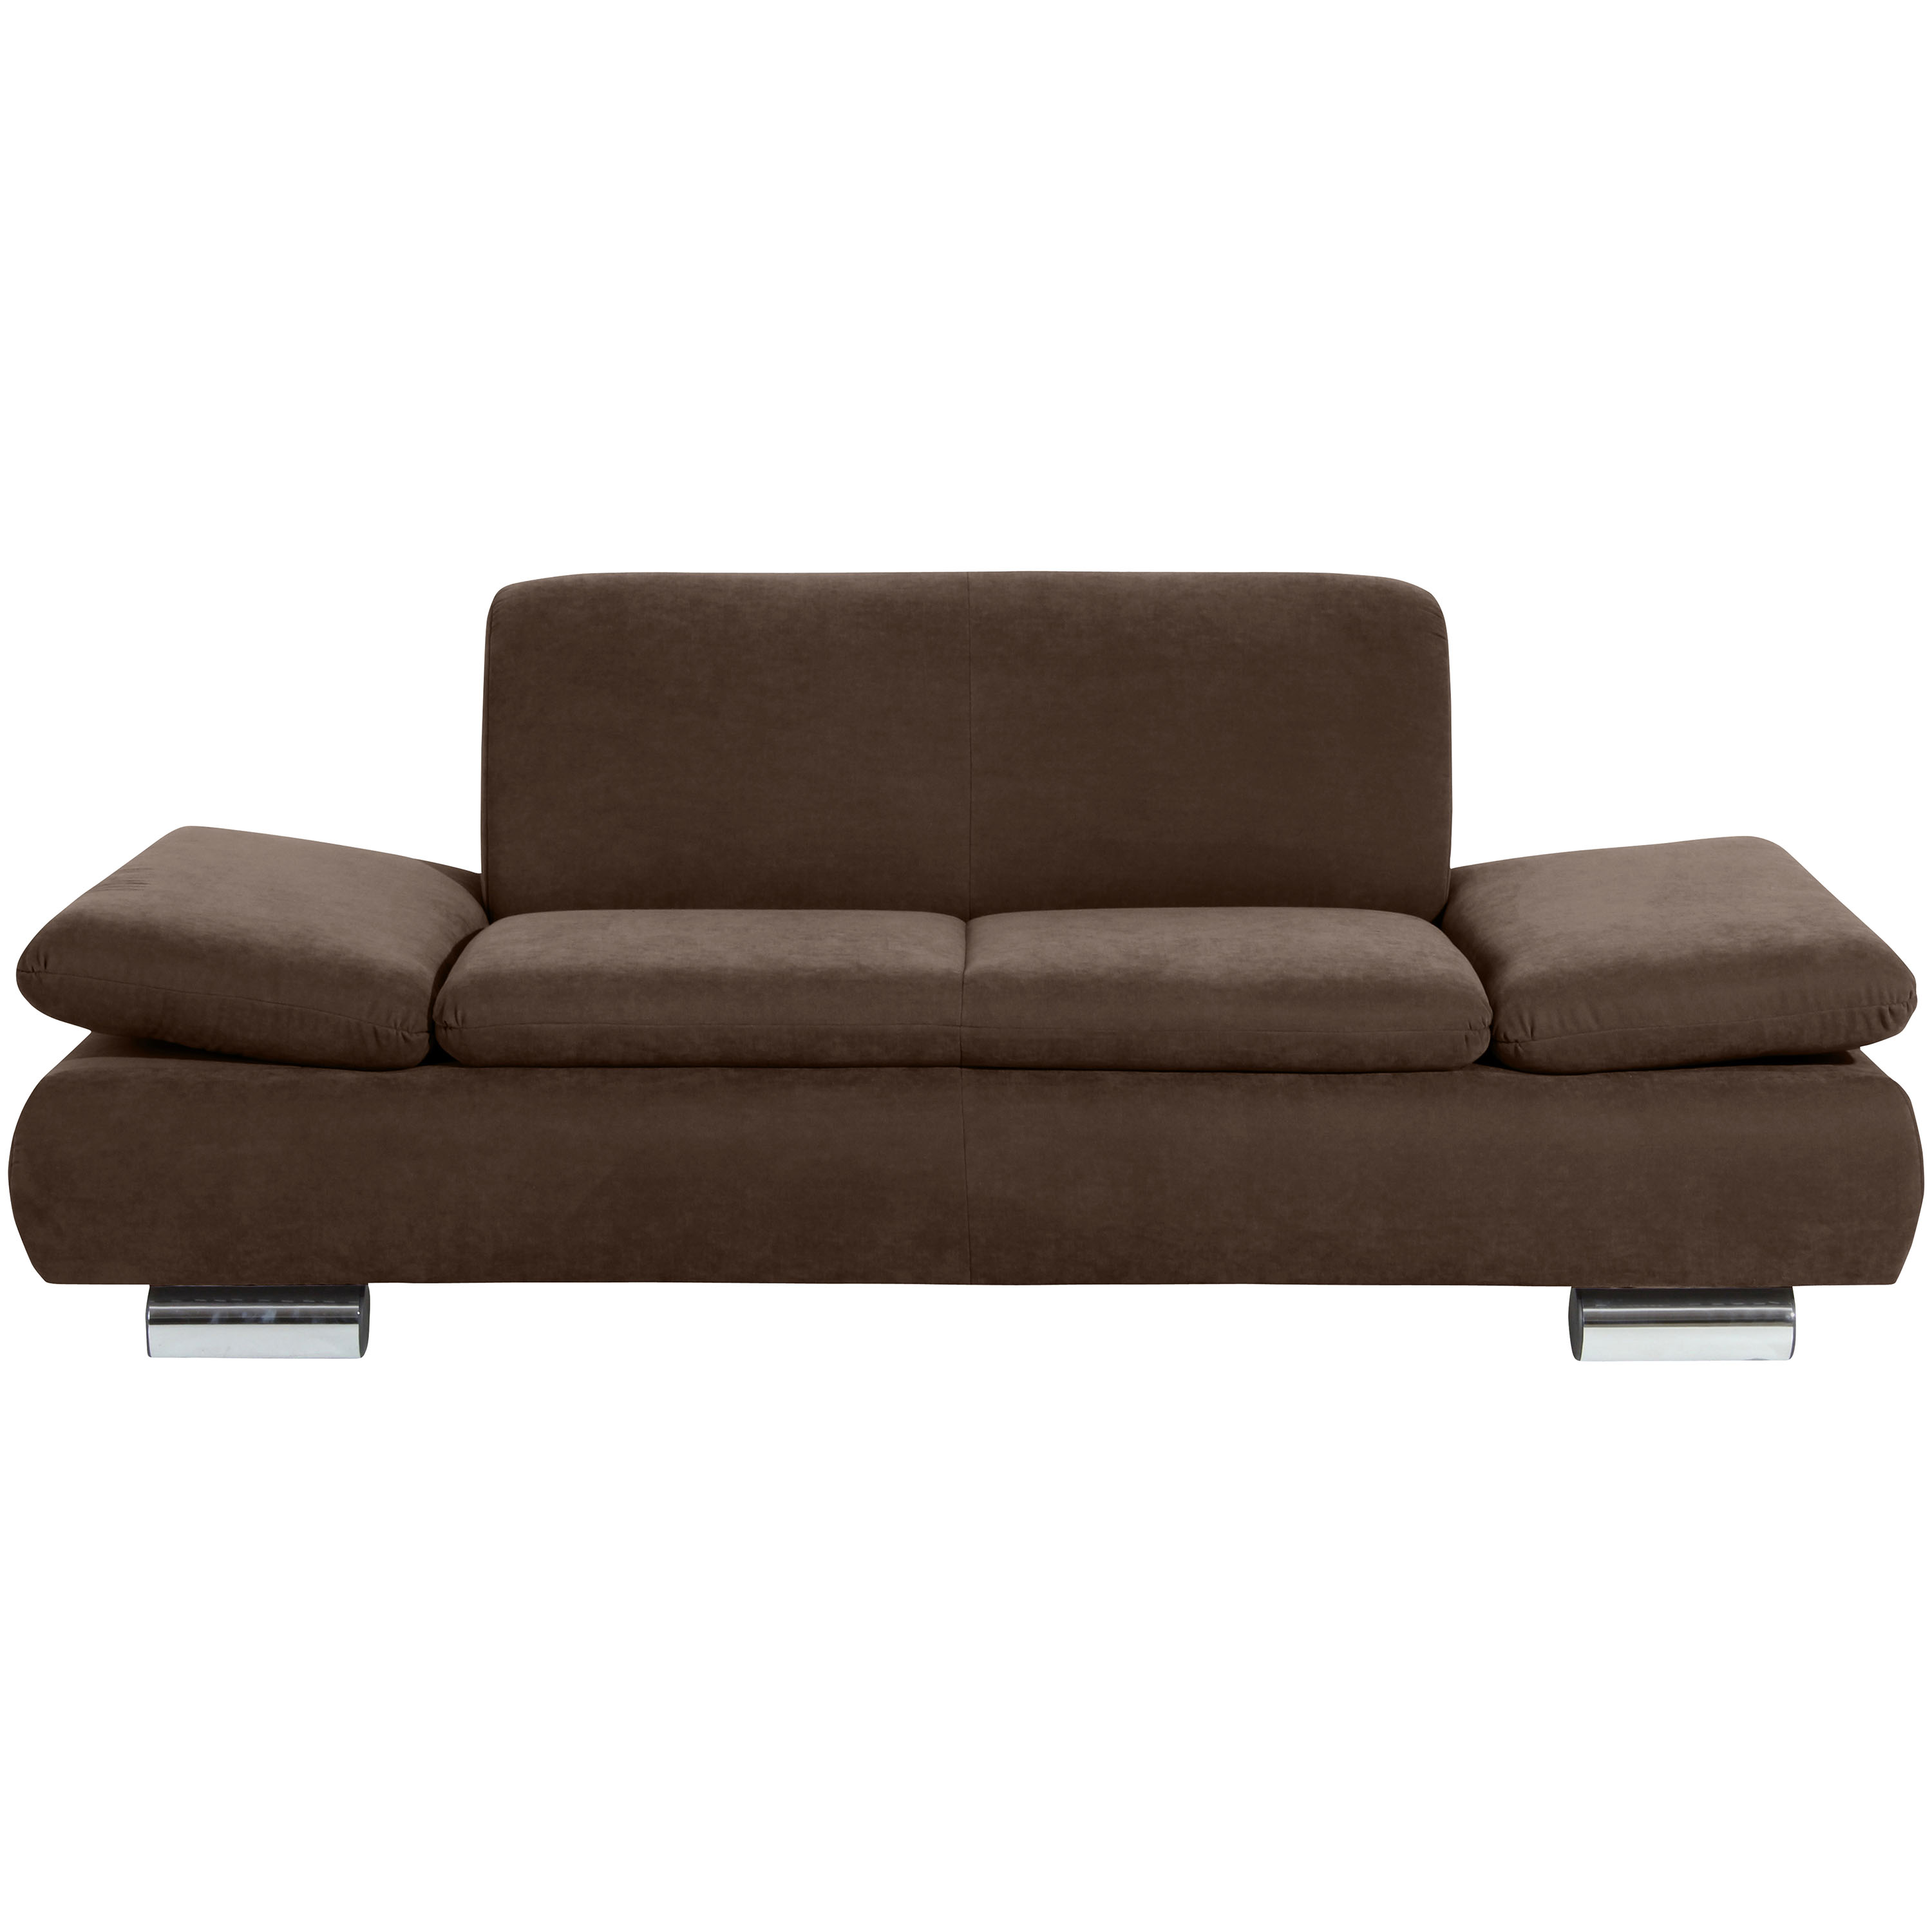 frontansicht von einem braunen 2-sitzer sofa mit verchromten metallfüssen